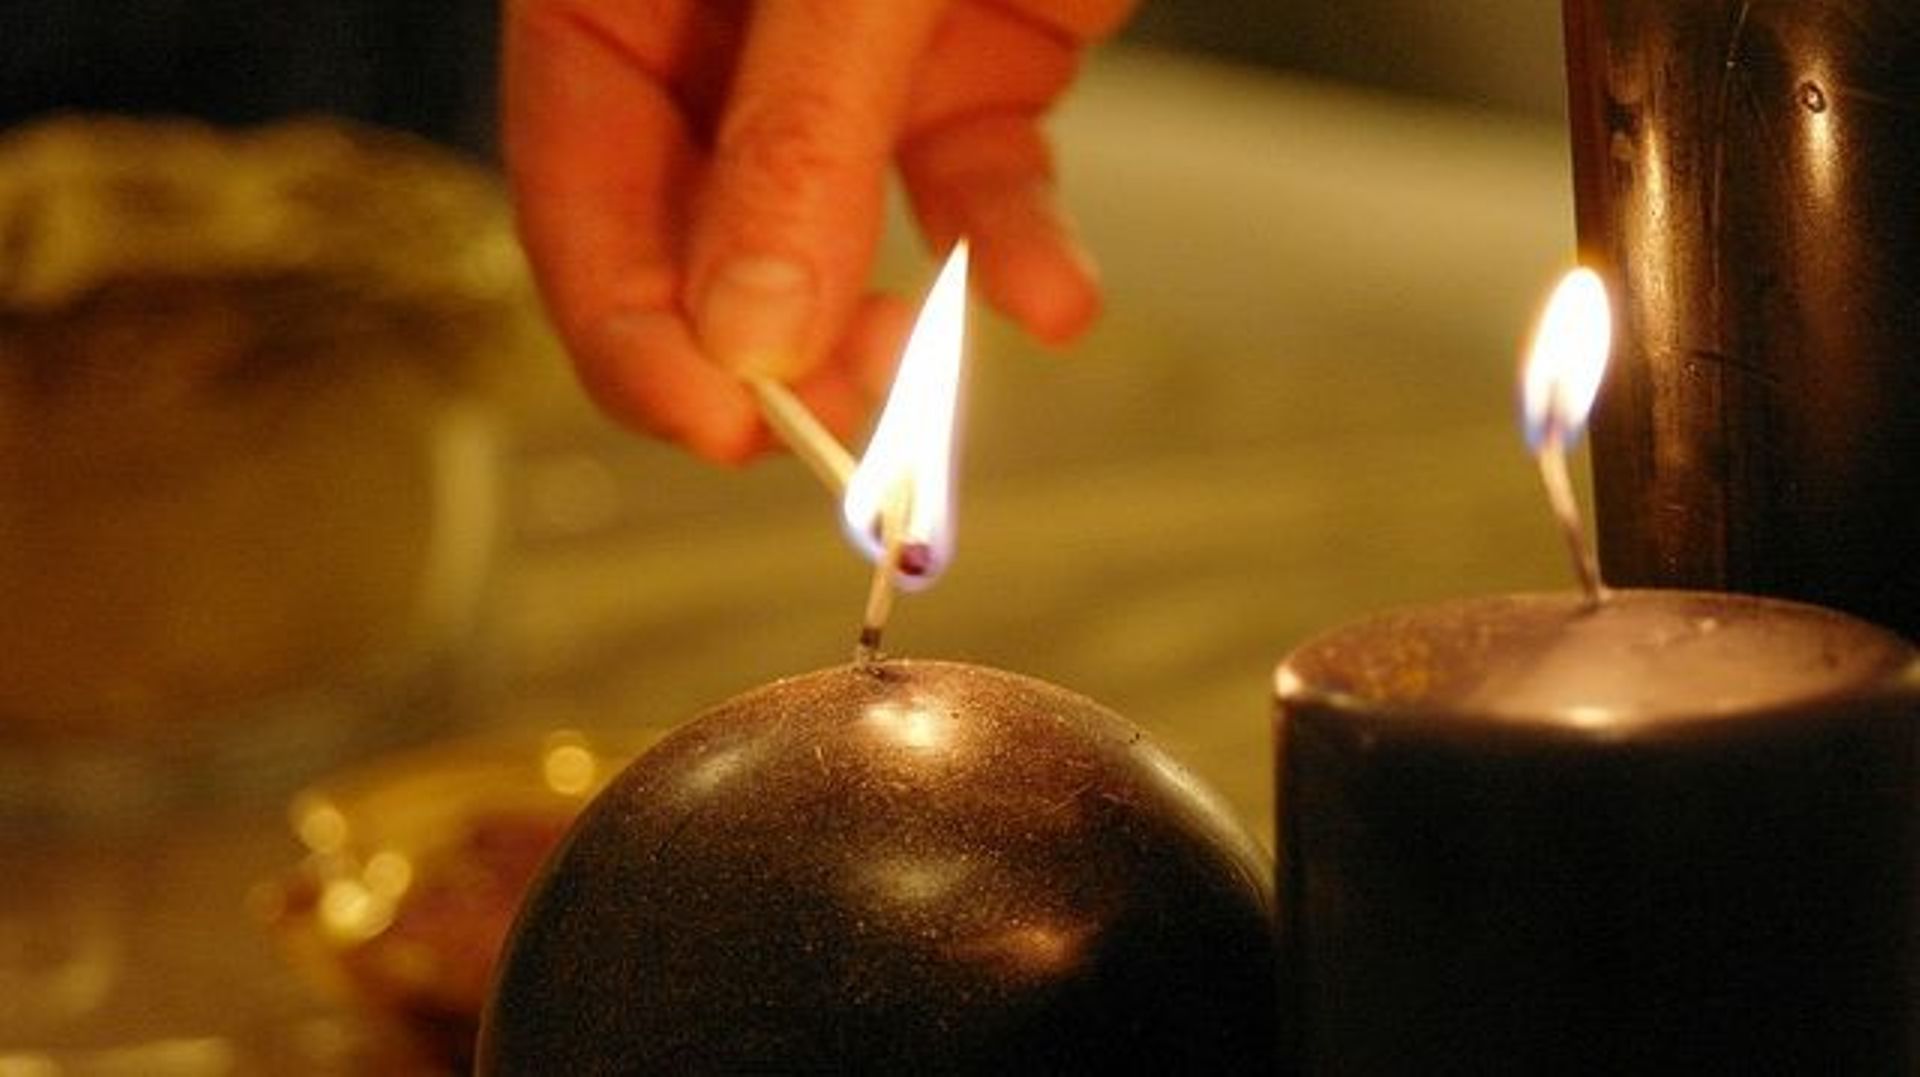 Vente privée Yankee Candle - Bougies parfumées pas cher